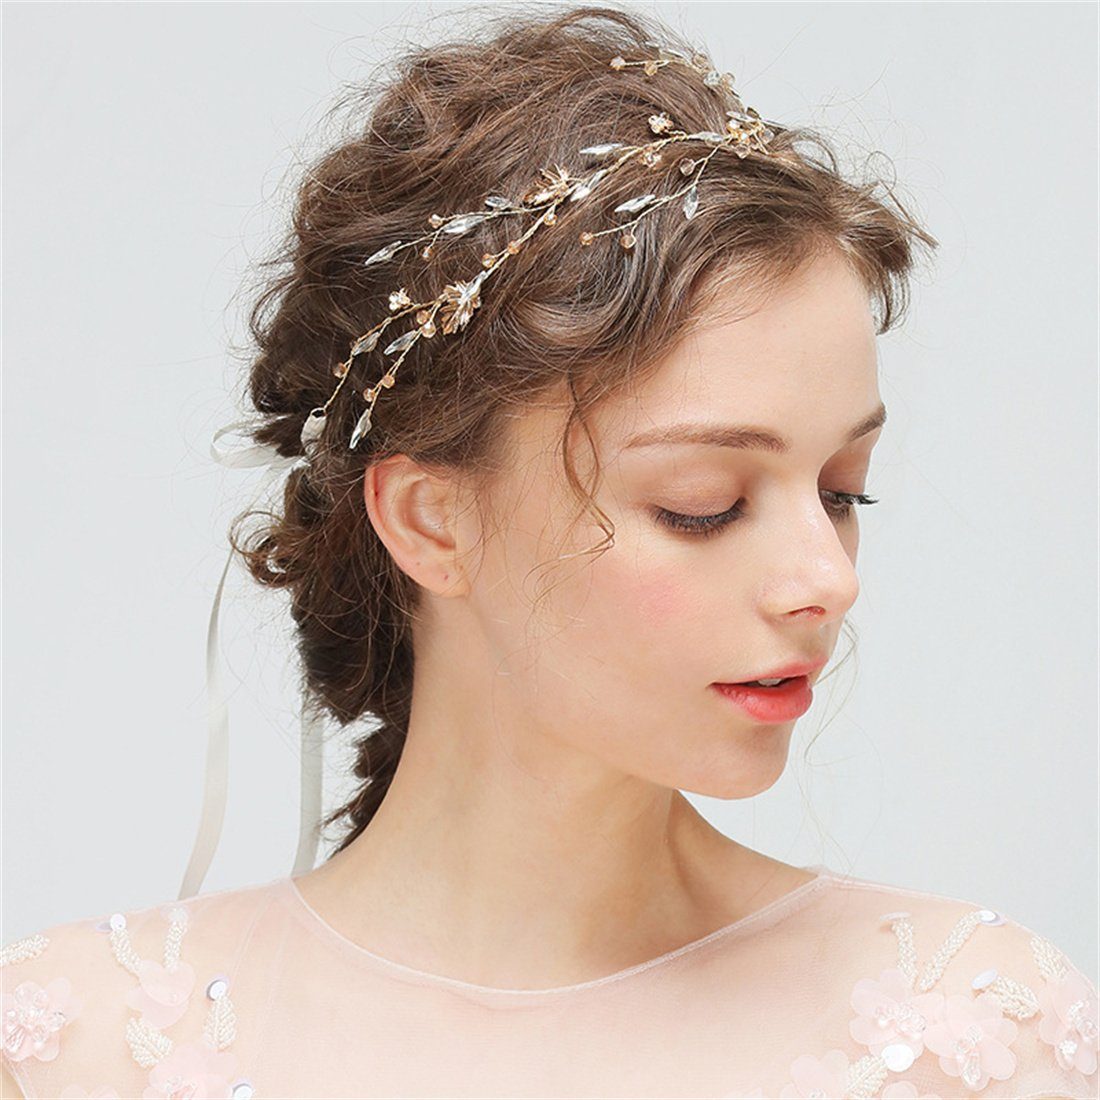 Kopfschmuck, Damen-Kristall-Haarband Diadem Hochzeit Accessoire Braut DÖRÖY